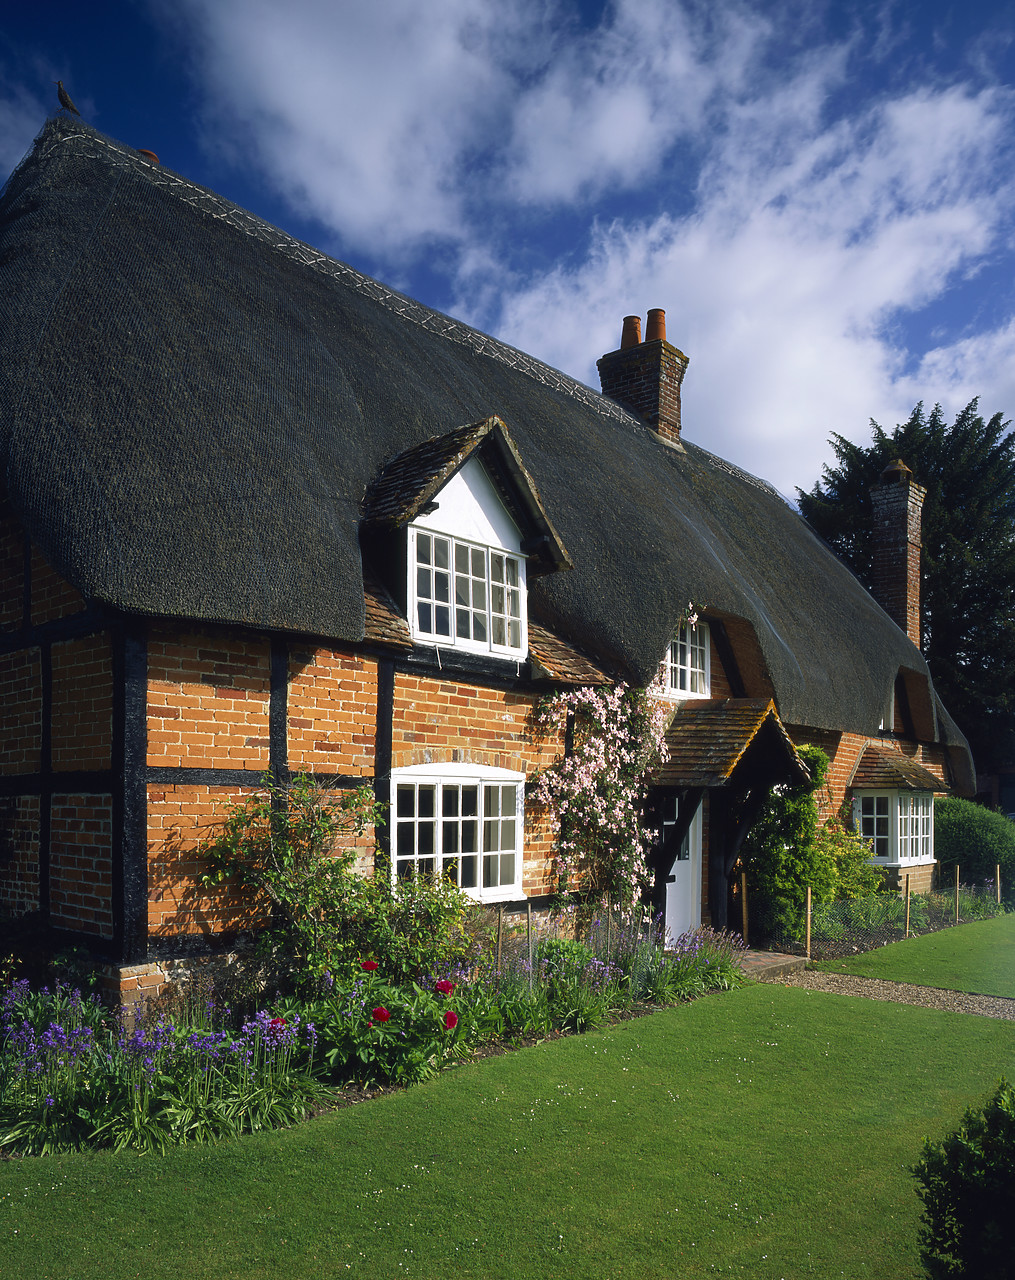 #050122-2 - Thatched Cottage, Longparish, Hampshire, England